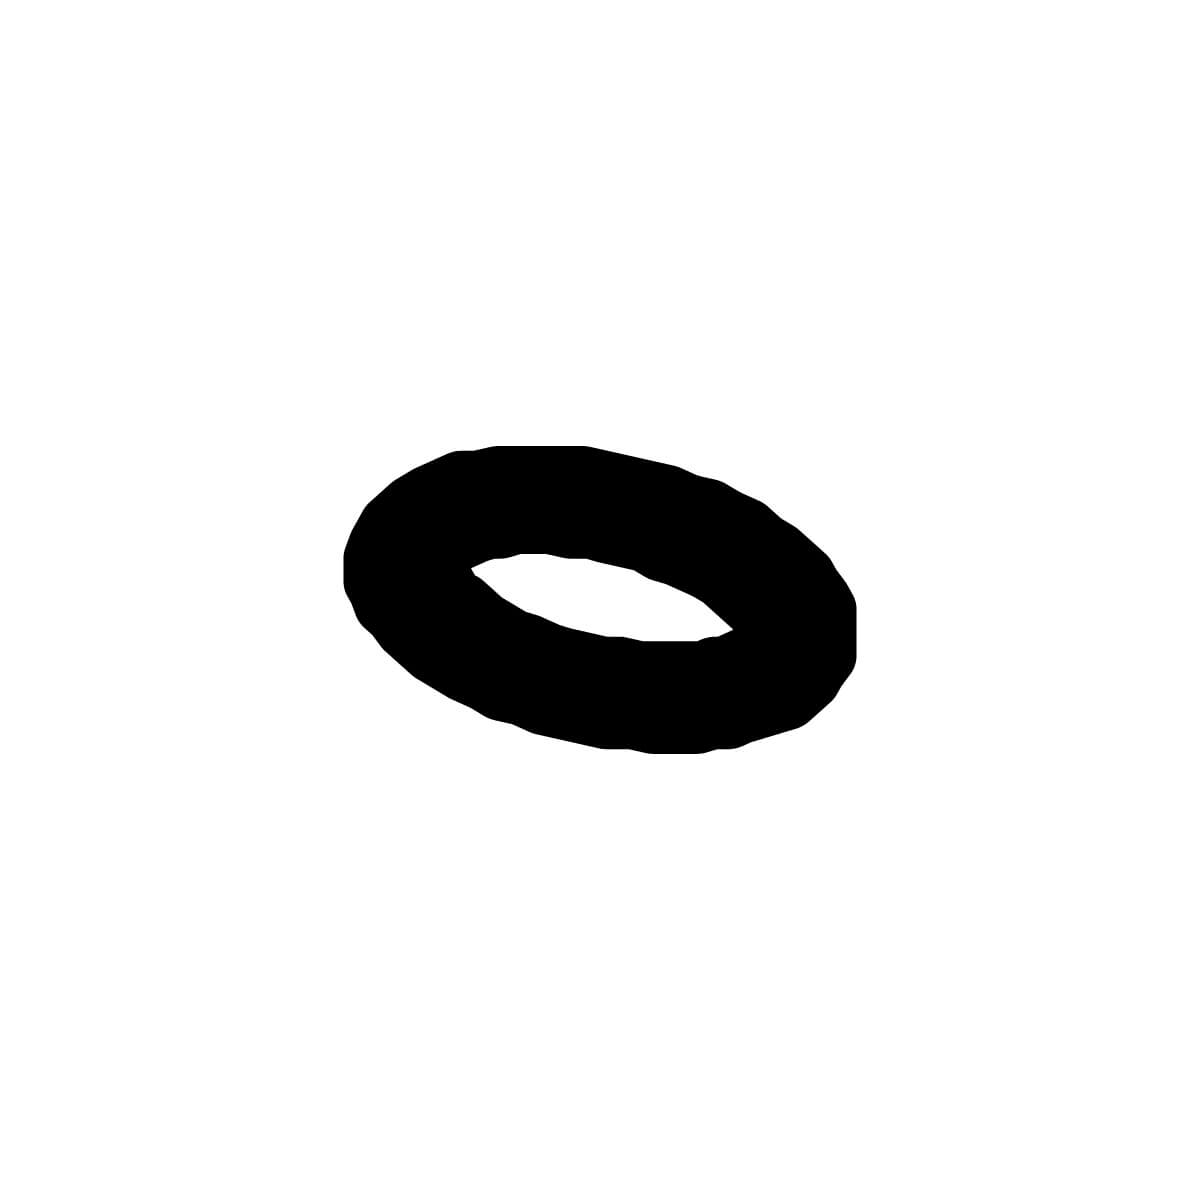 O-ring seal - Santos #11 (11331)